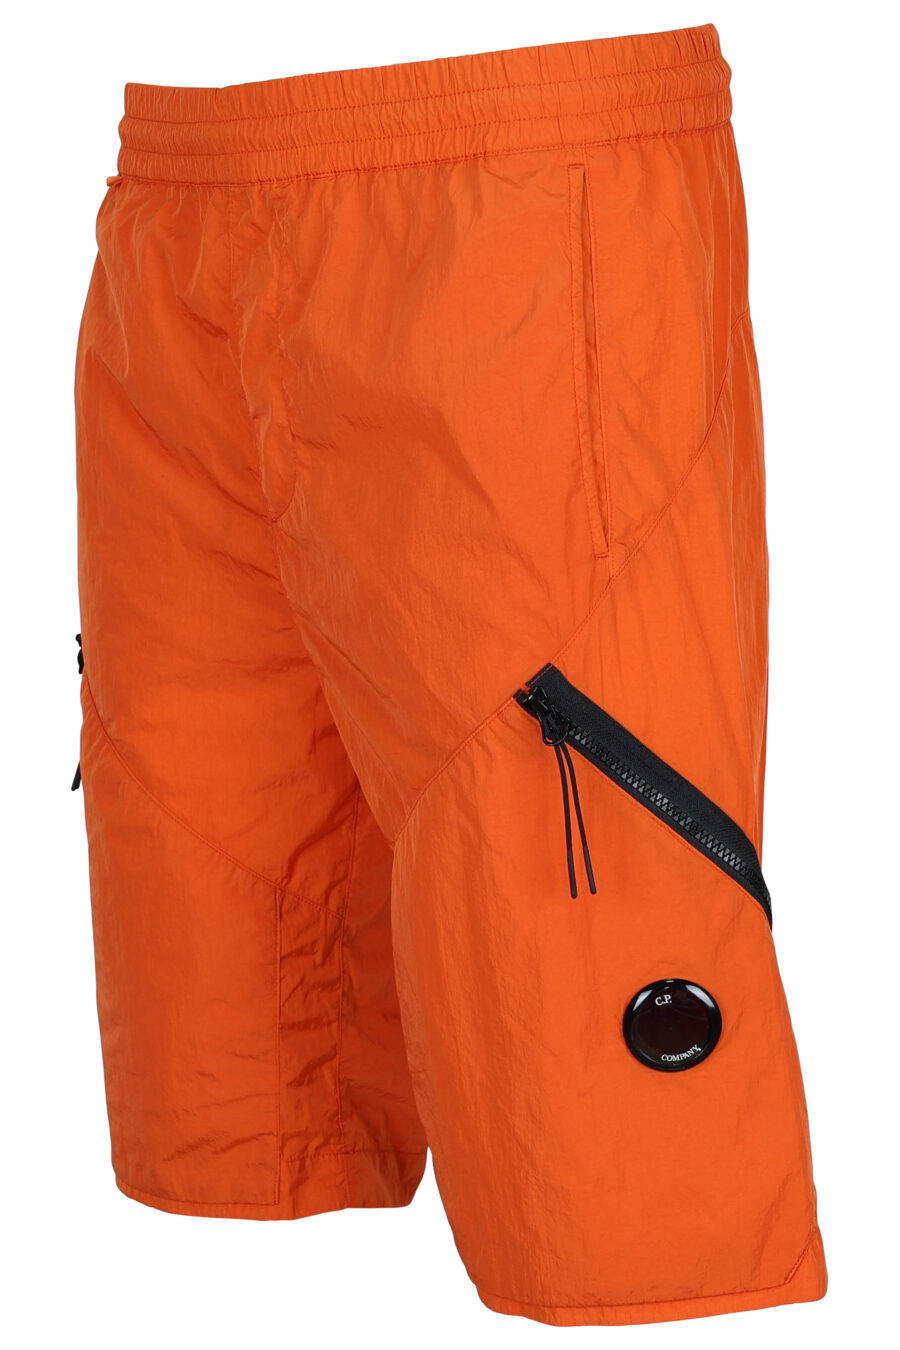 Orangefarbene Shorts mit diagonalem Reißverschluss und Linsenlogo - 7620943518290 1